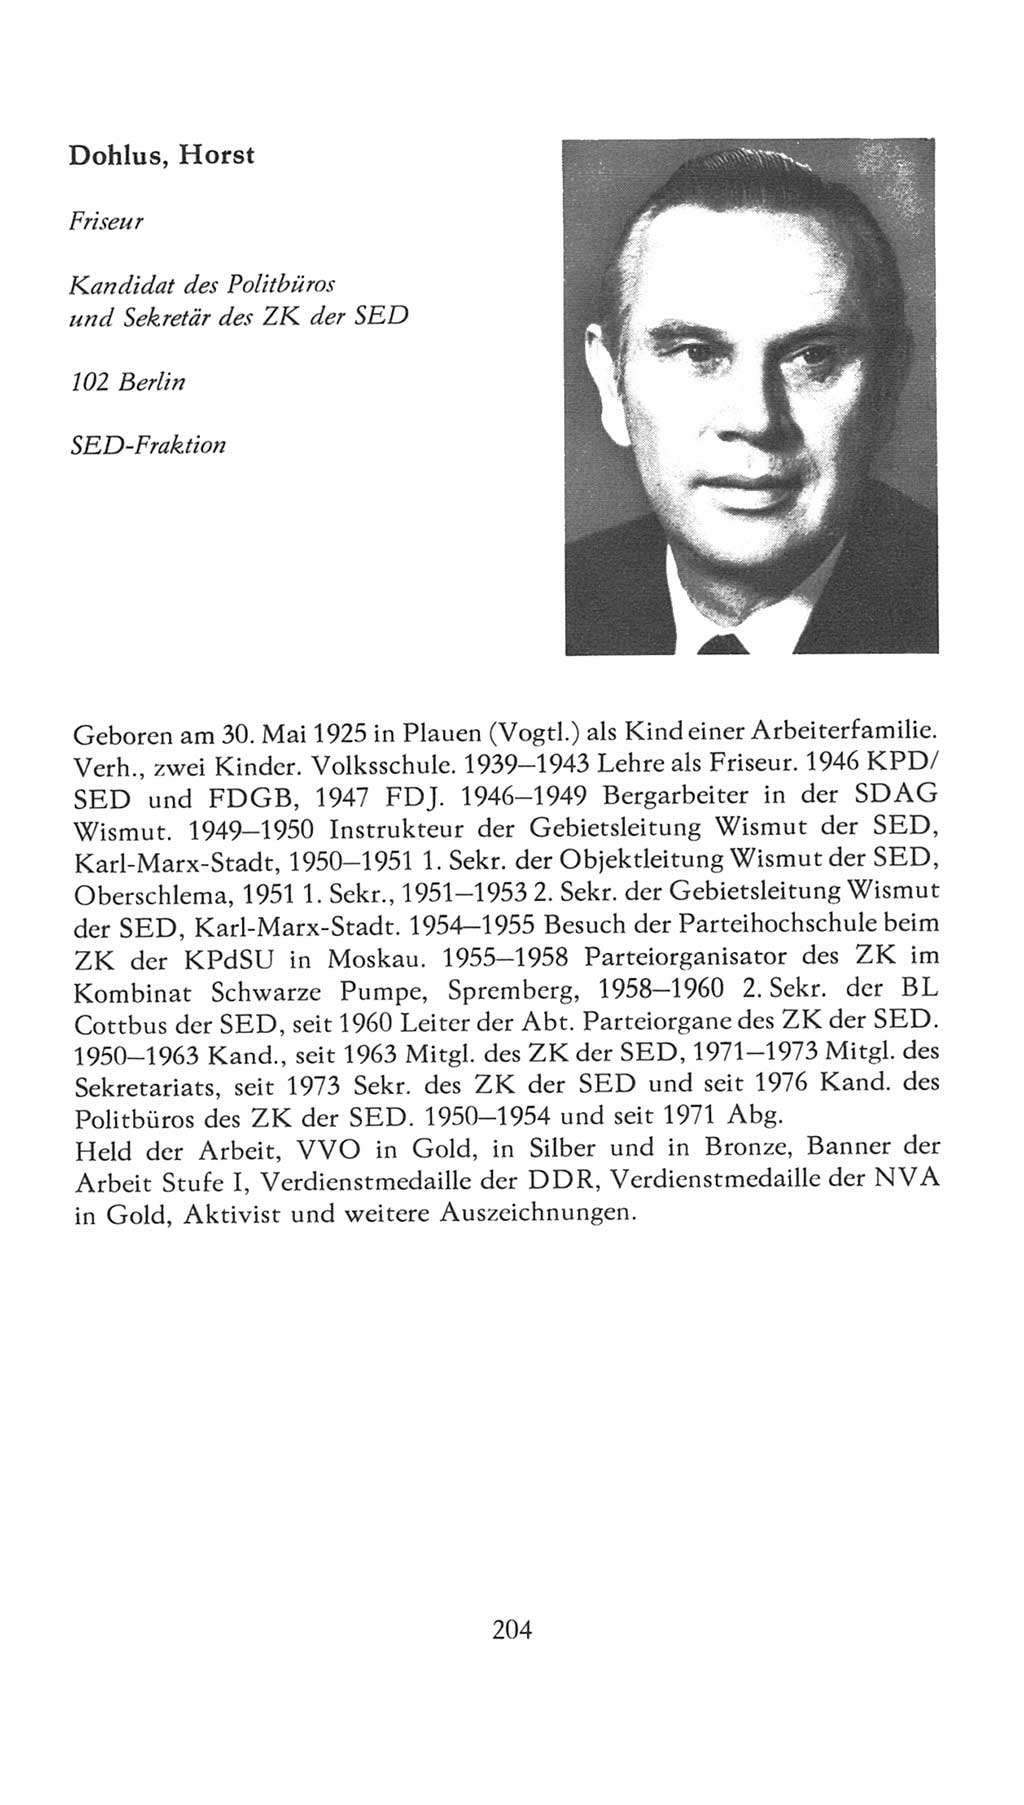 Volkskammer (VK) der Deutschen Demokratischen Republik (DDR), 7. Wahlperiode 1976-1981, Seite 204 (VK. DDR 7. WP. 1976-1981, S. 204)